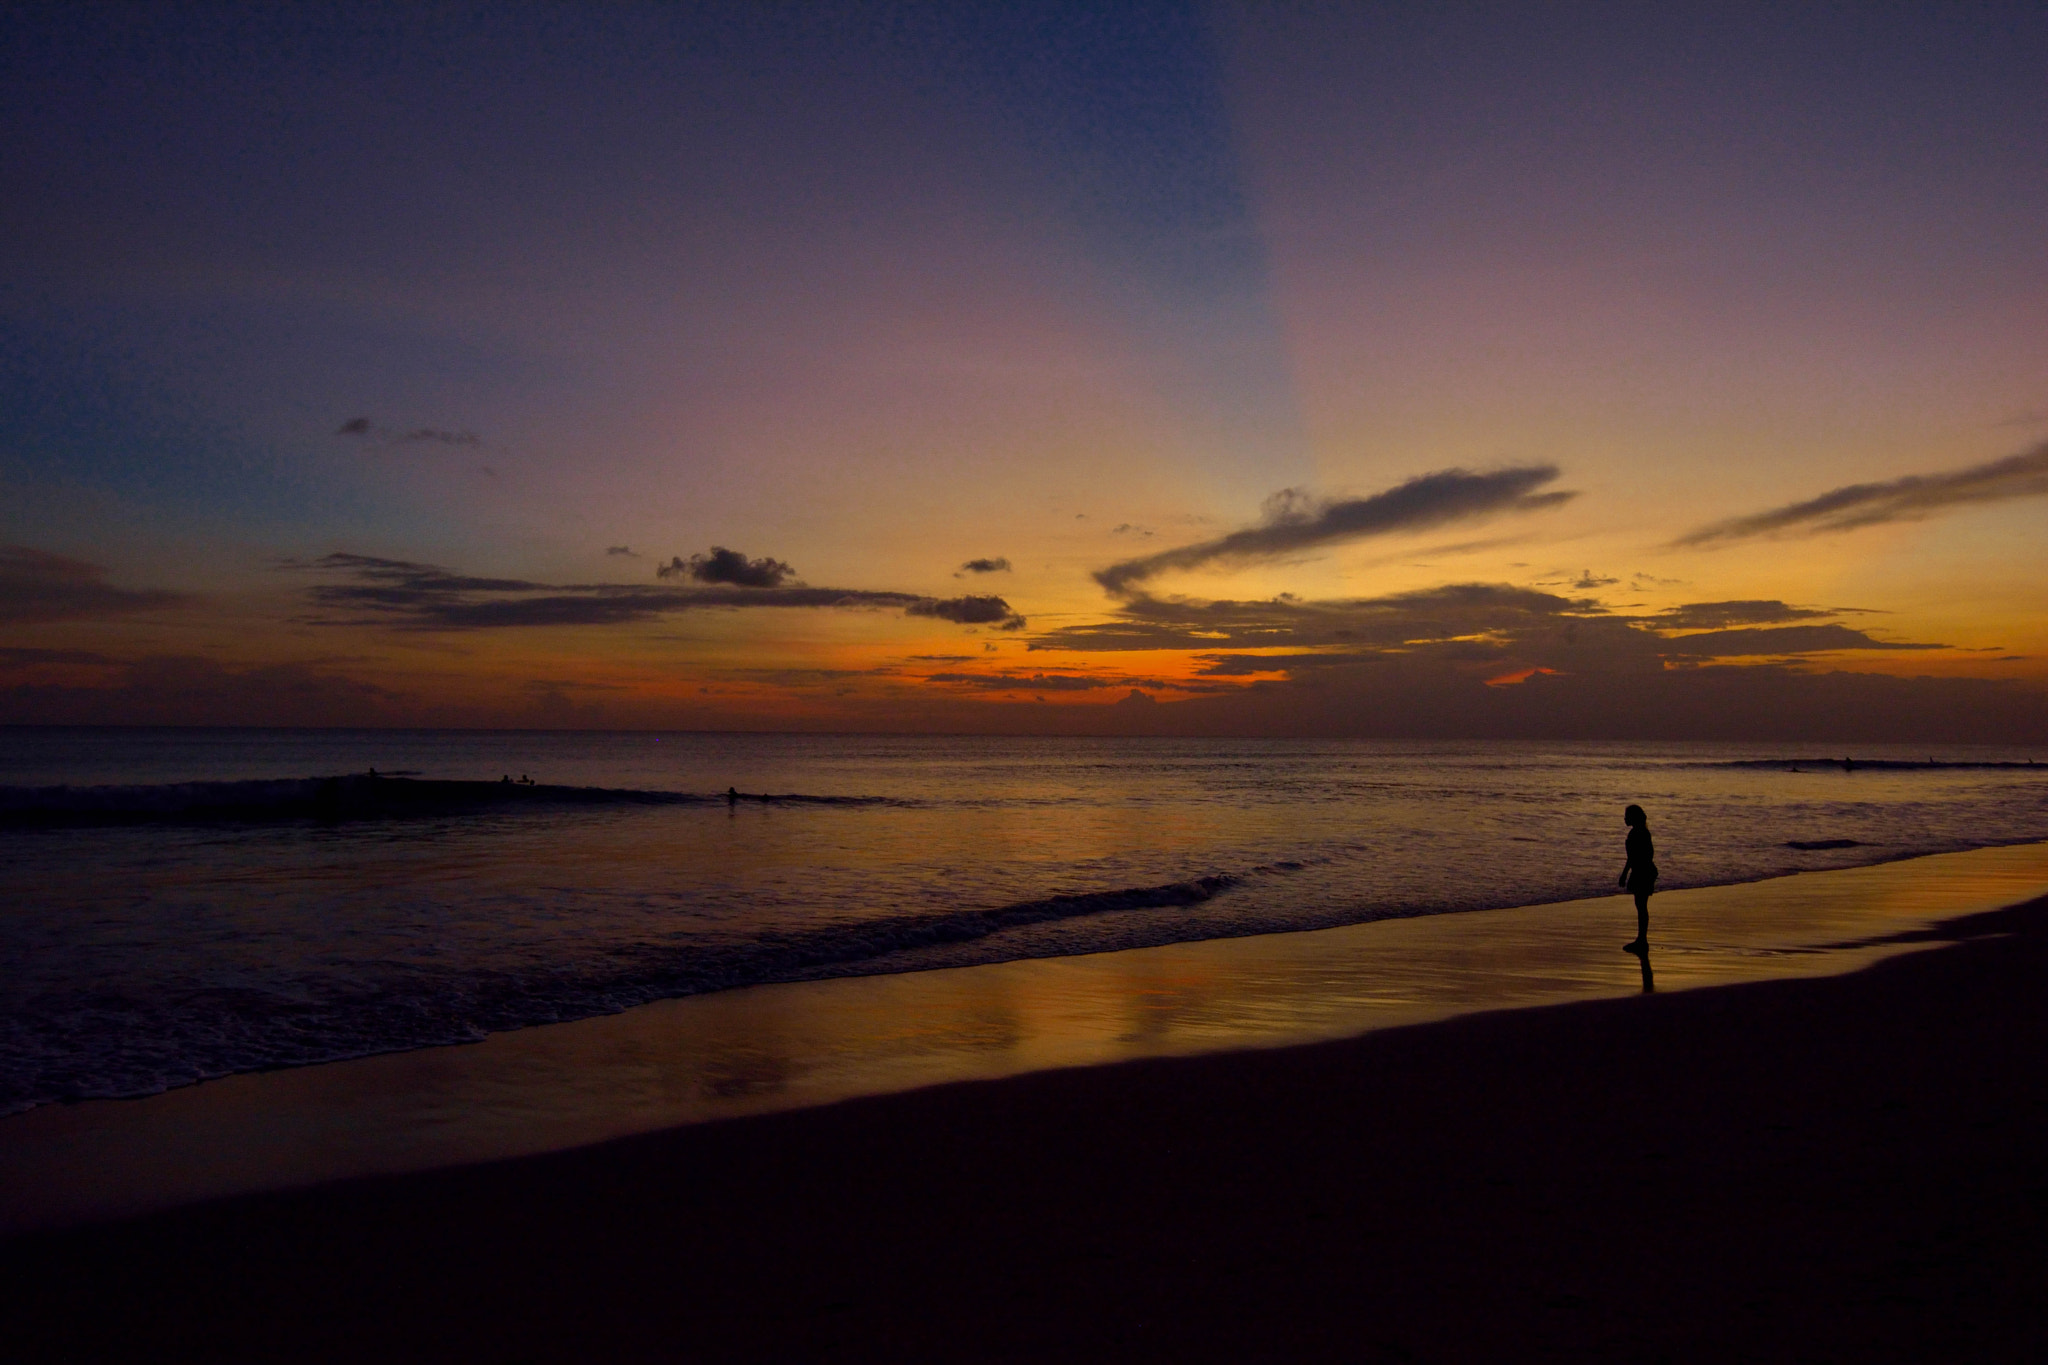 Nikon D7100 sample photo. An evening scene kuta beach photography